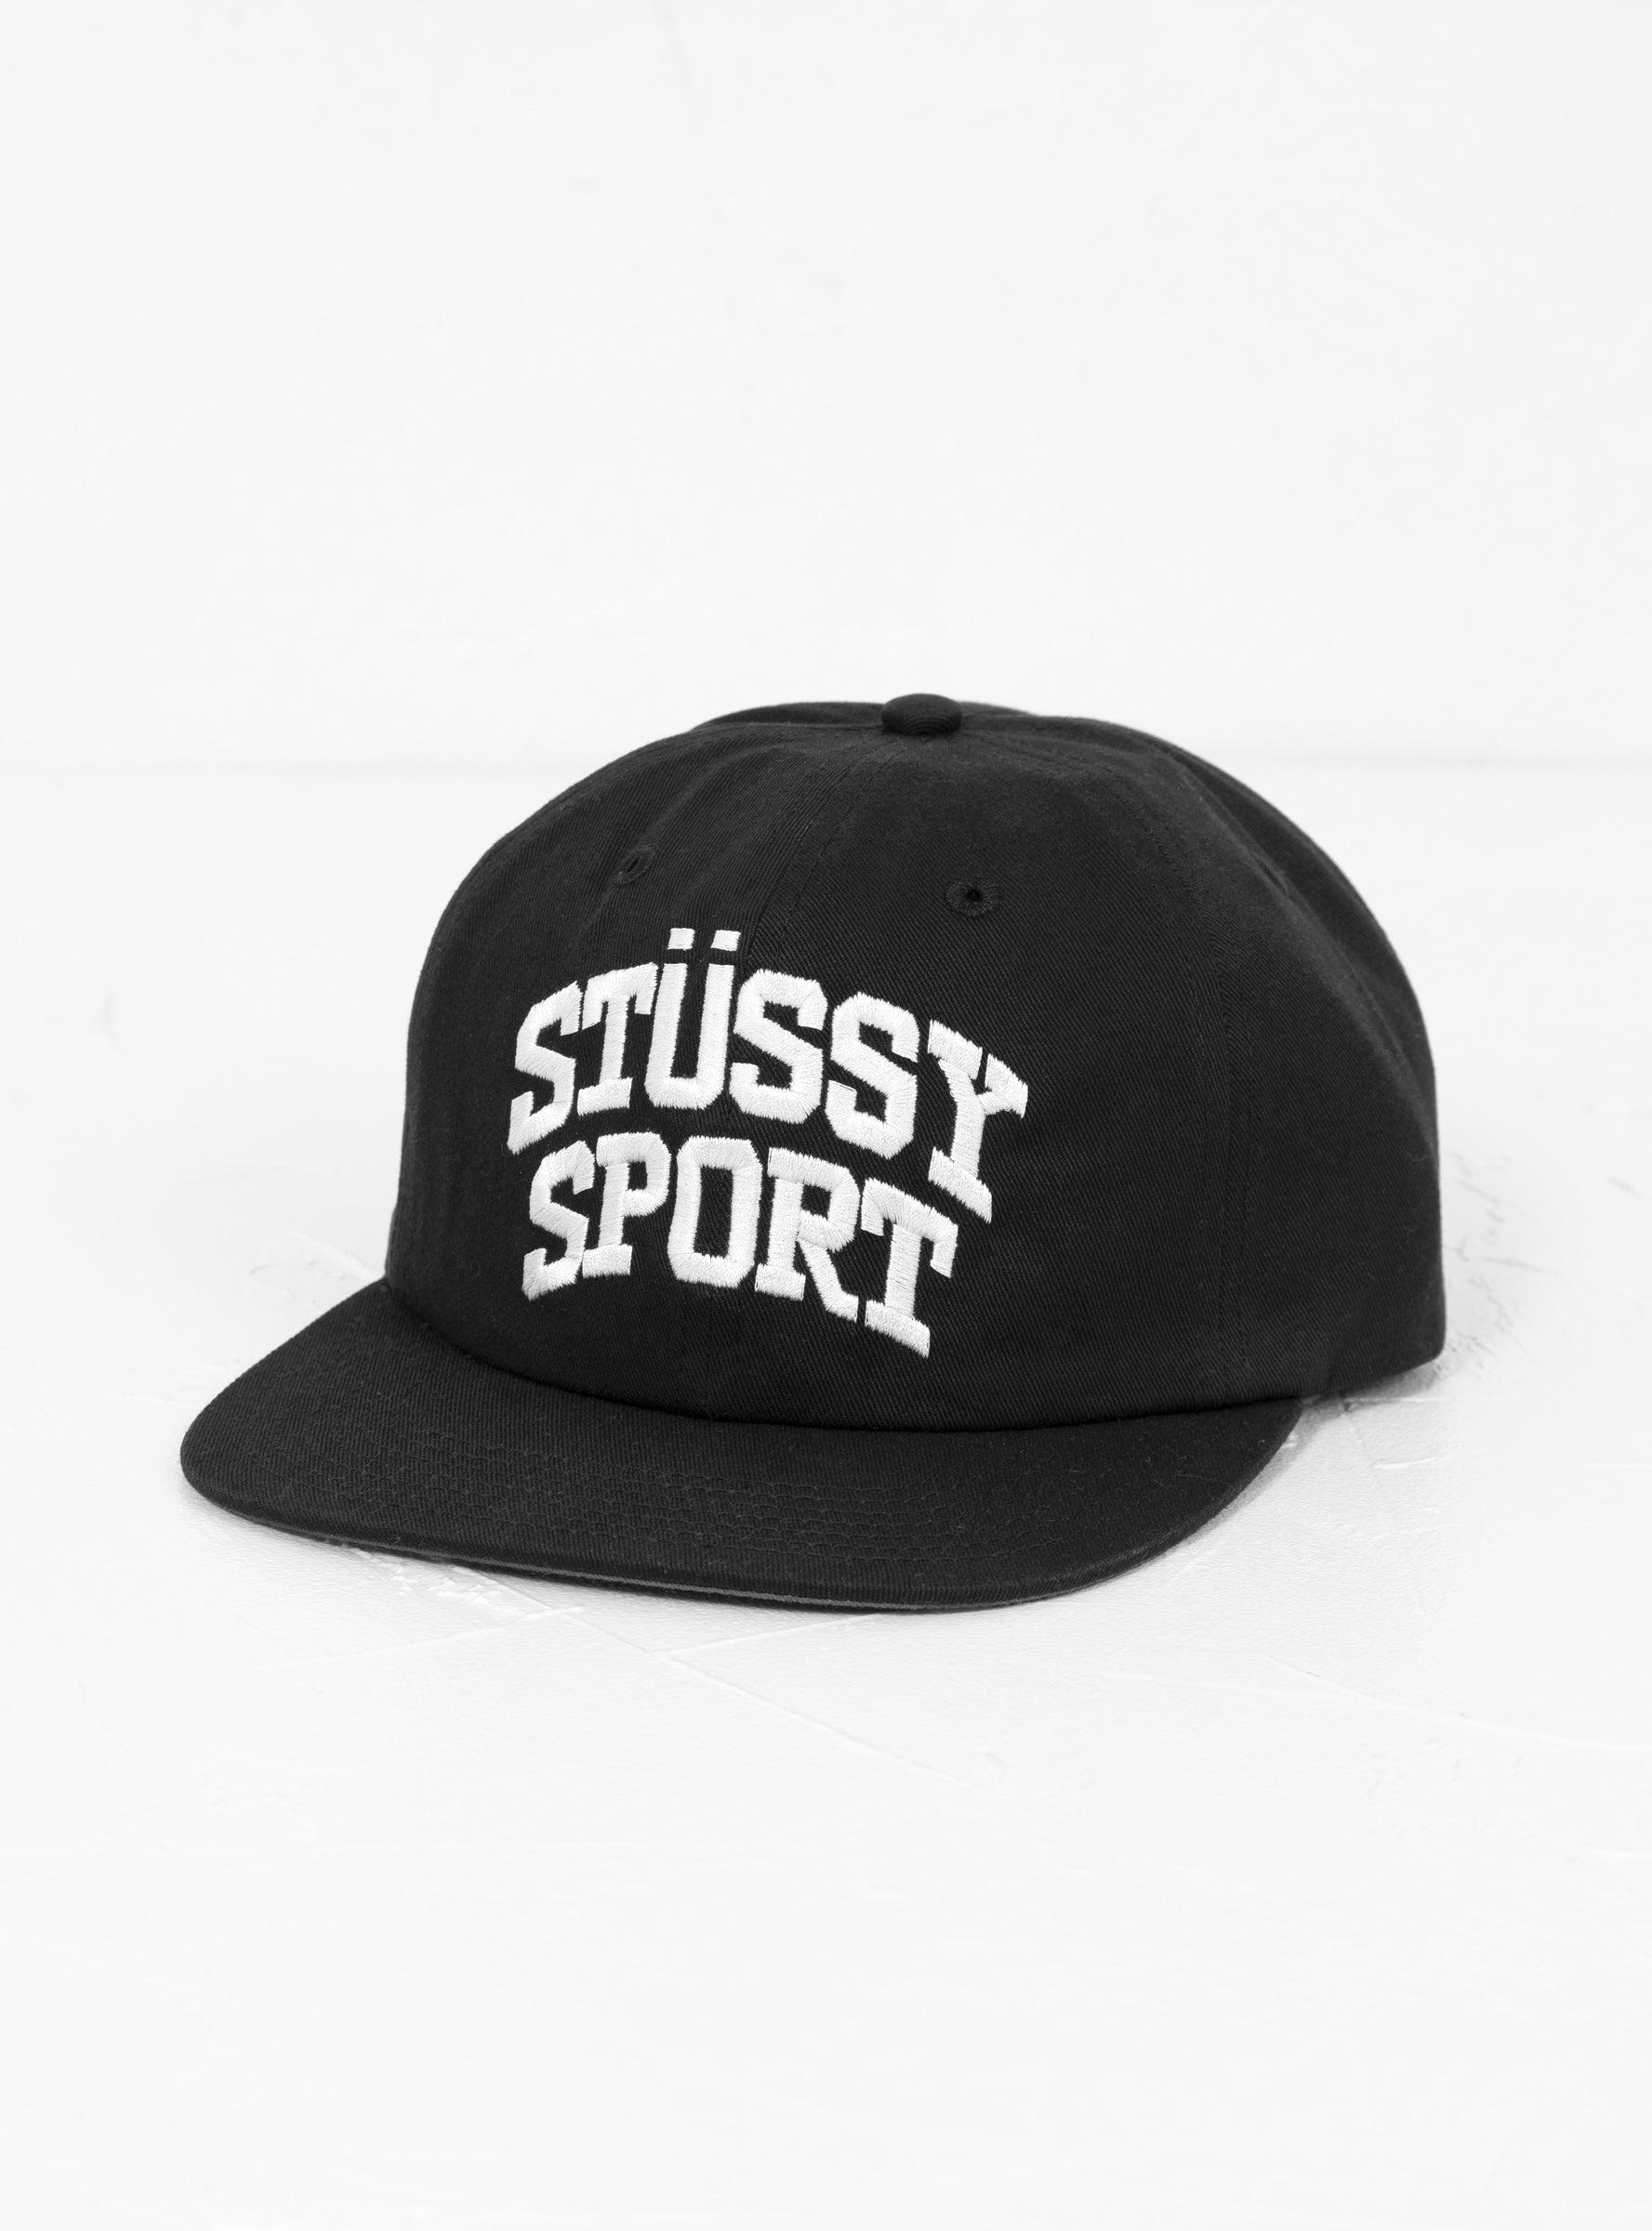 Stussy Stussy Sport Cap Black for Men | Lyst